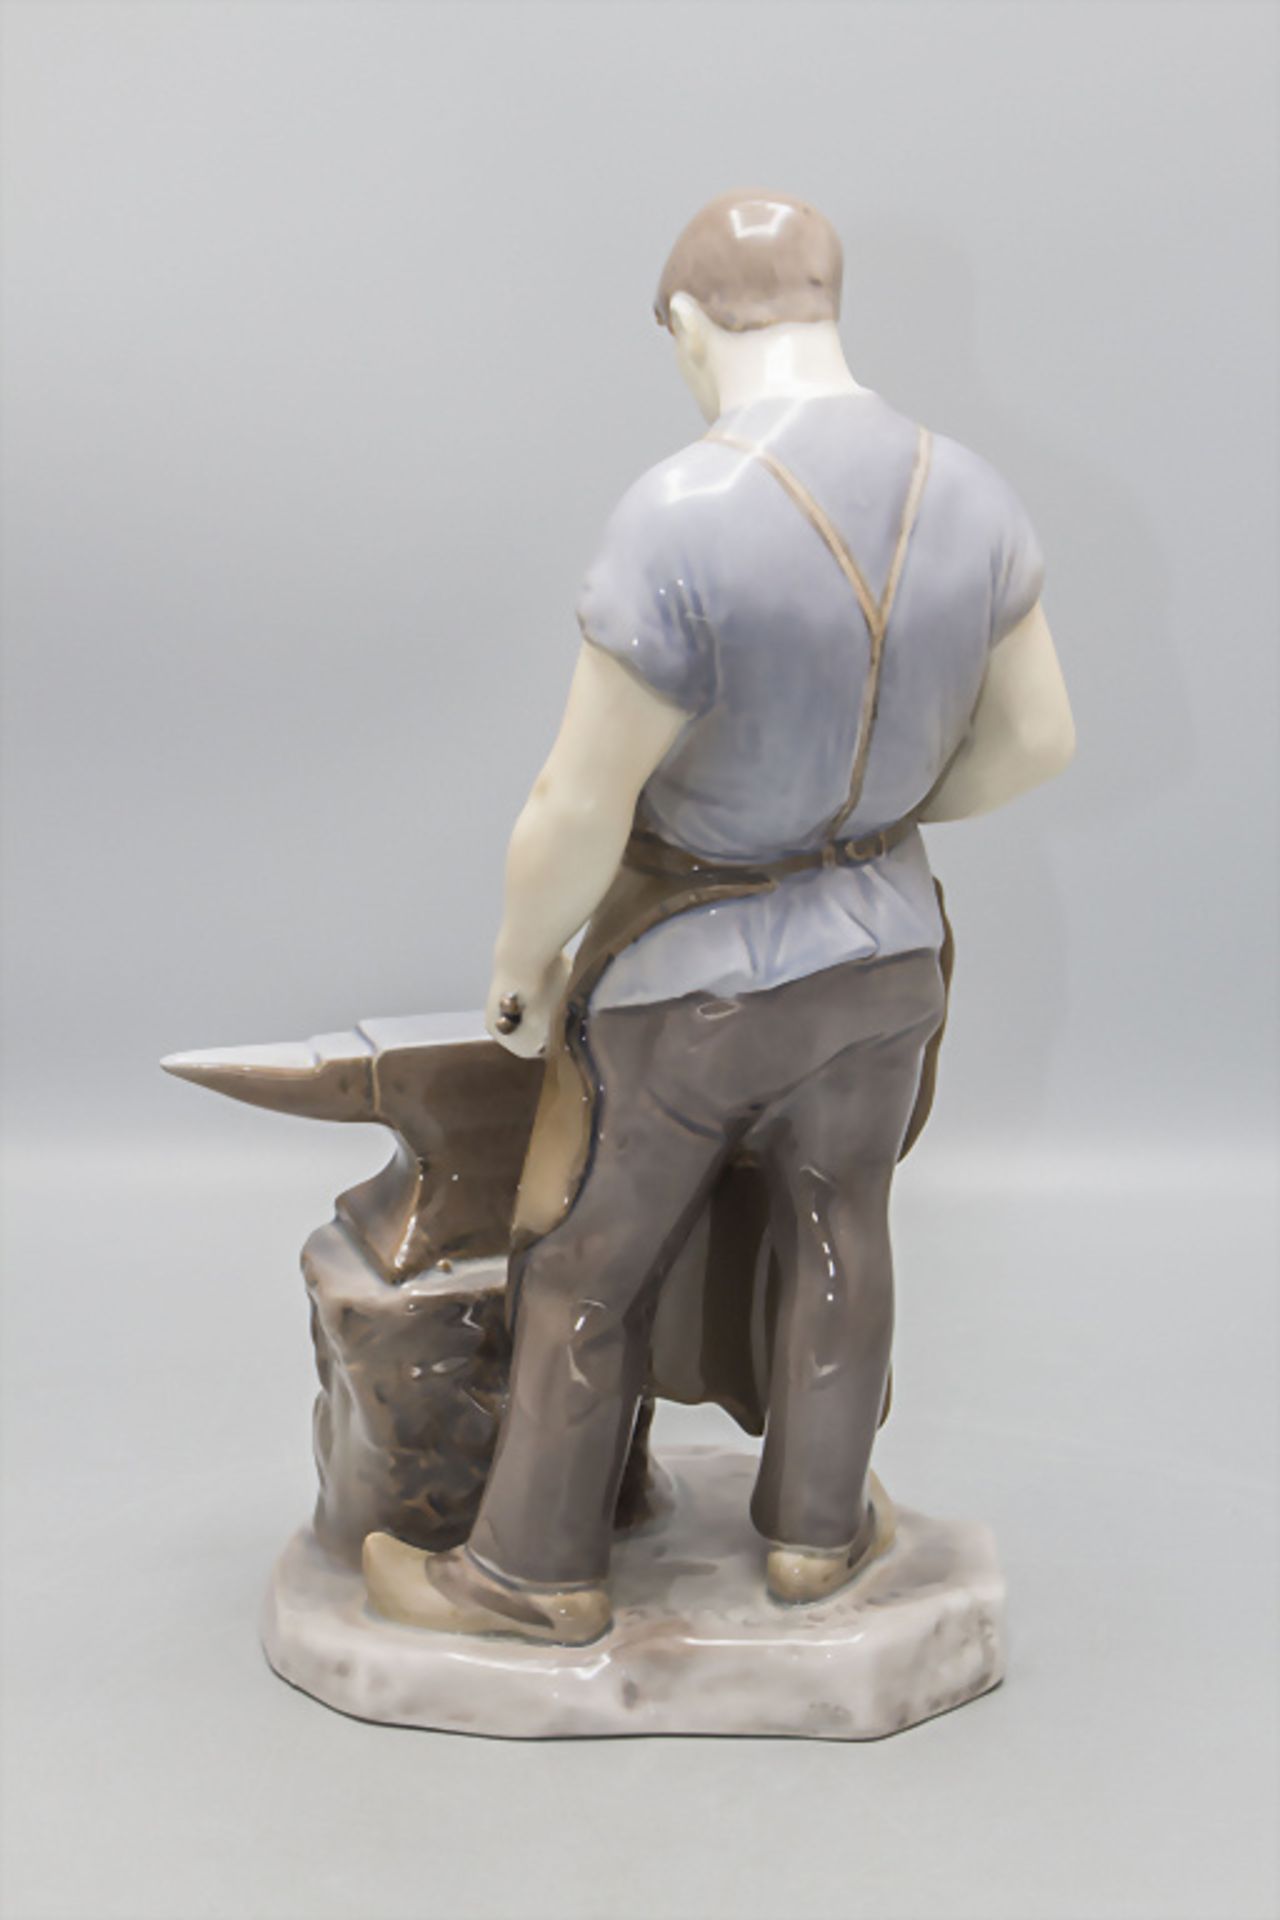 Porzellanfigur 'Schmied' / A porcelain figure of a blacksmith, Bing & Gröndahl, Copenhagen - Image 3 of 8